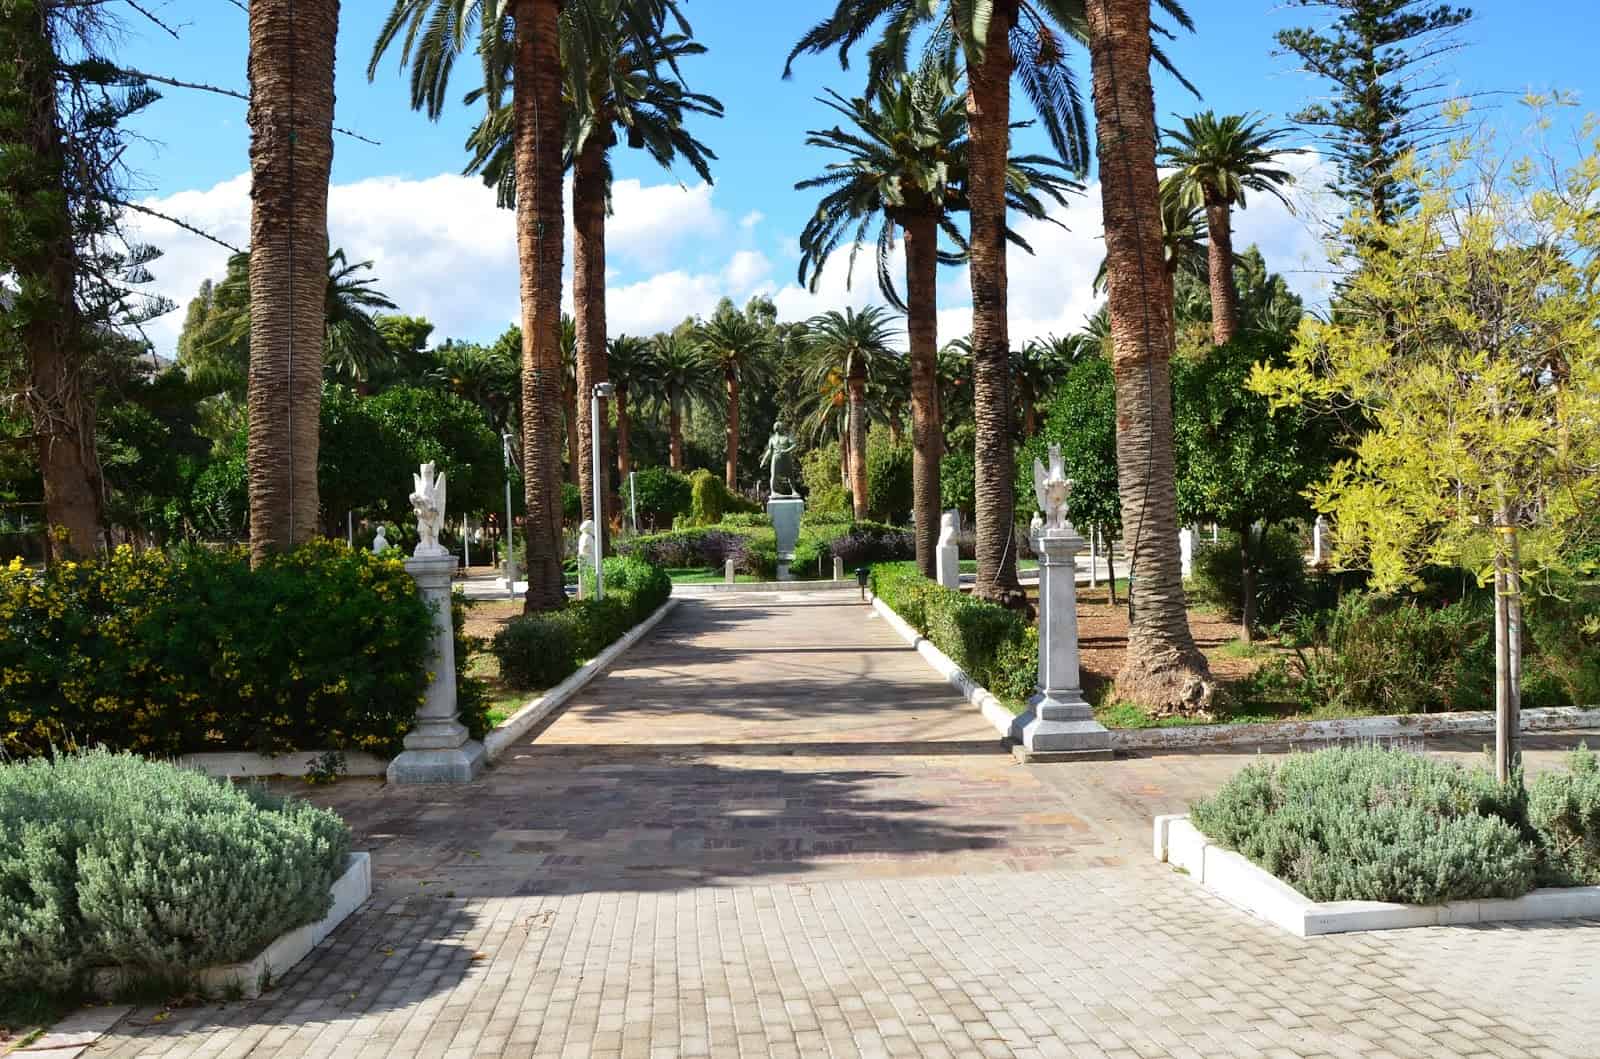 Municipal Garden in Chora, Chios, Greece